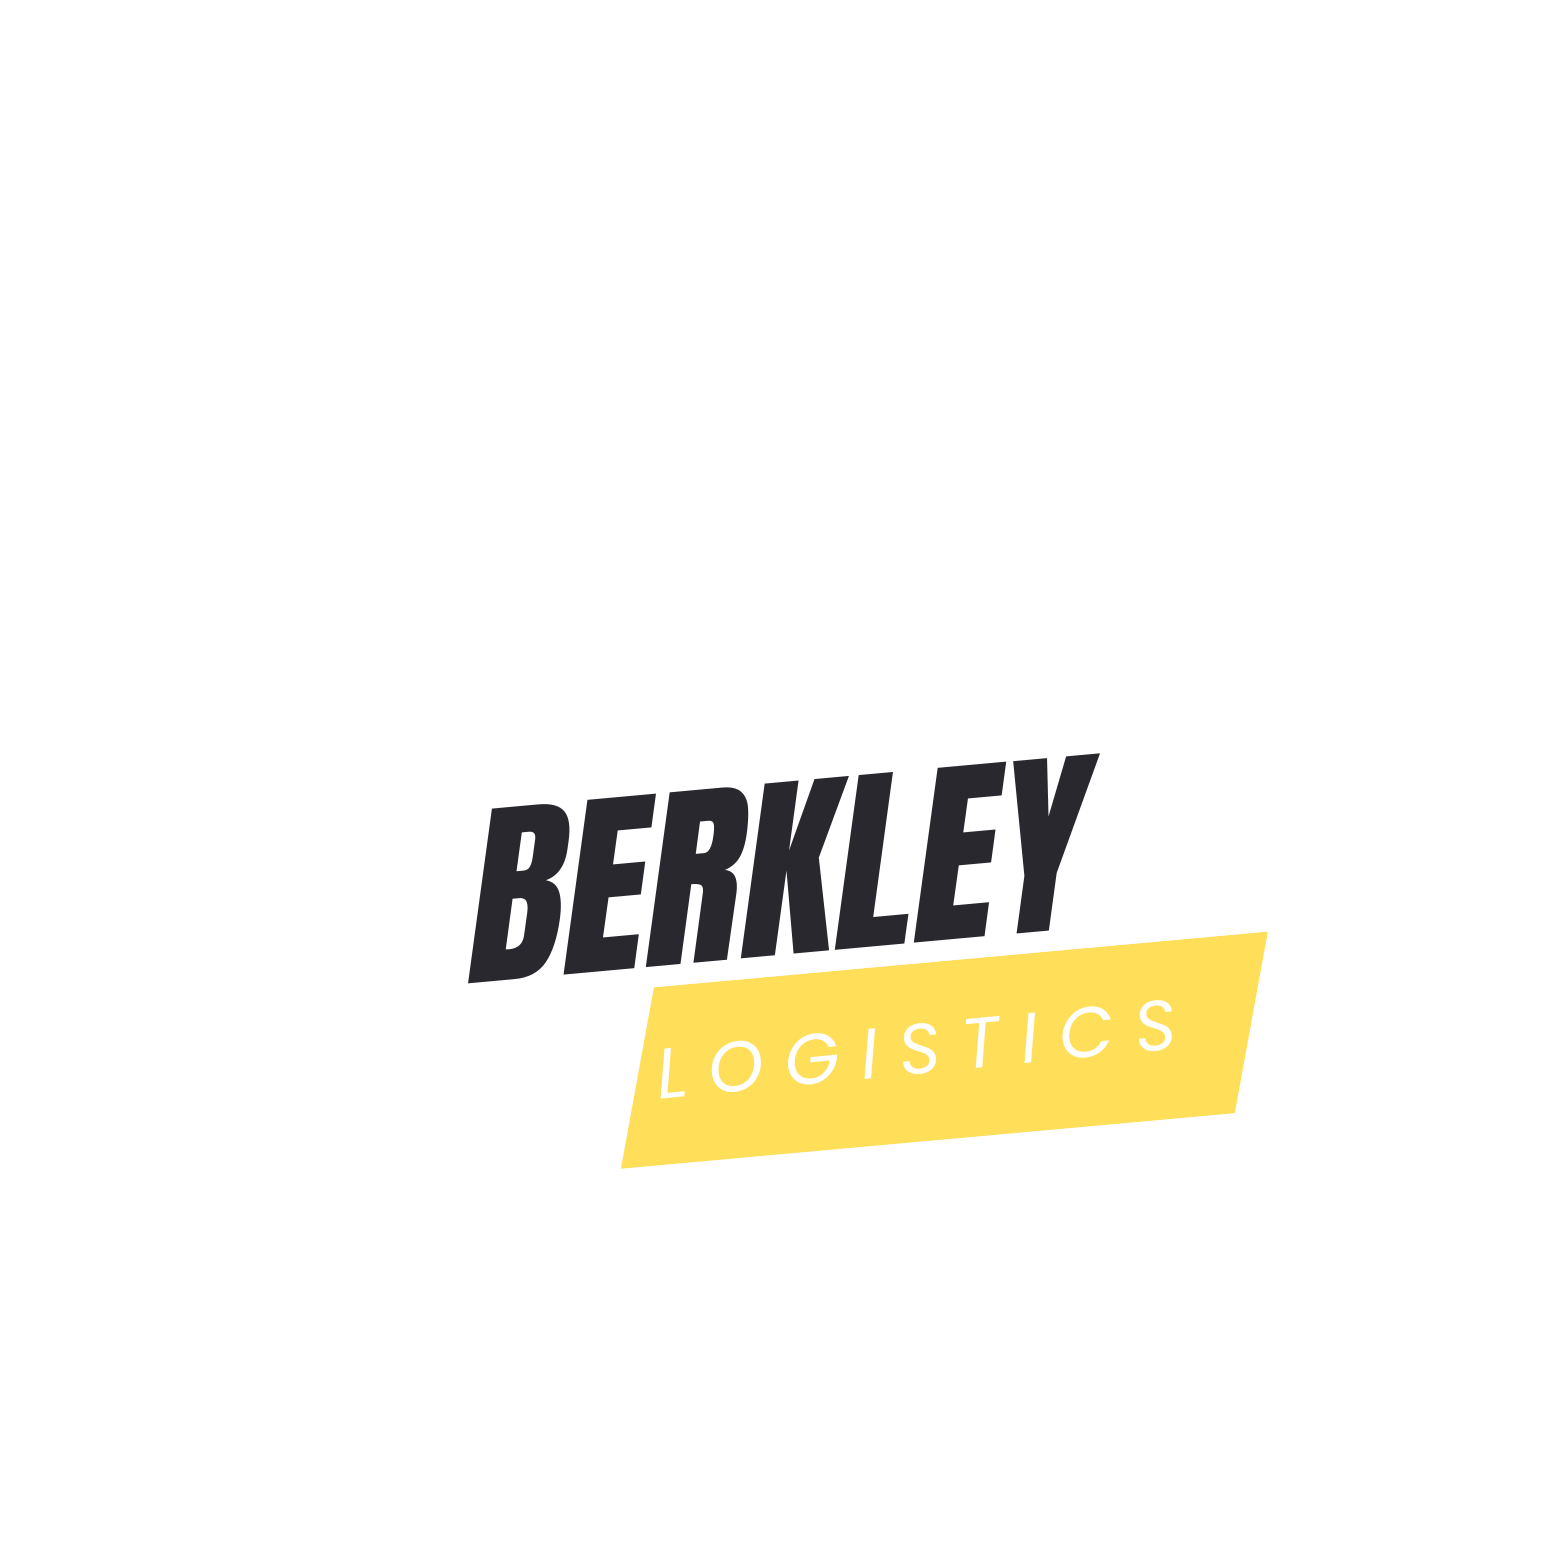 Berkley Logistics – Fast & Discreet Deliveries